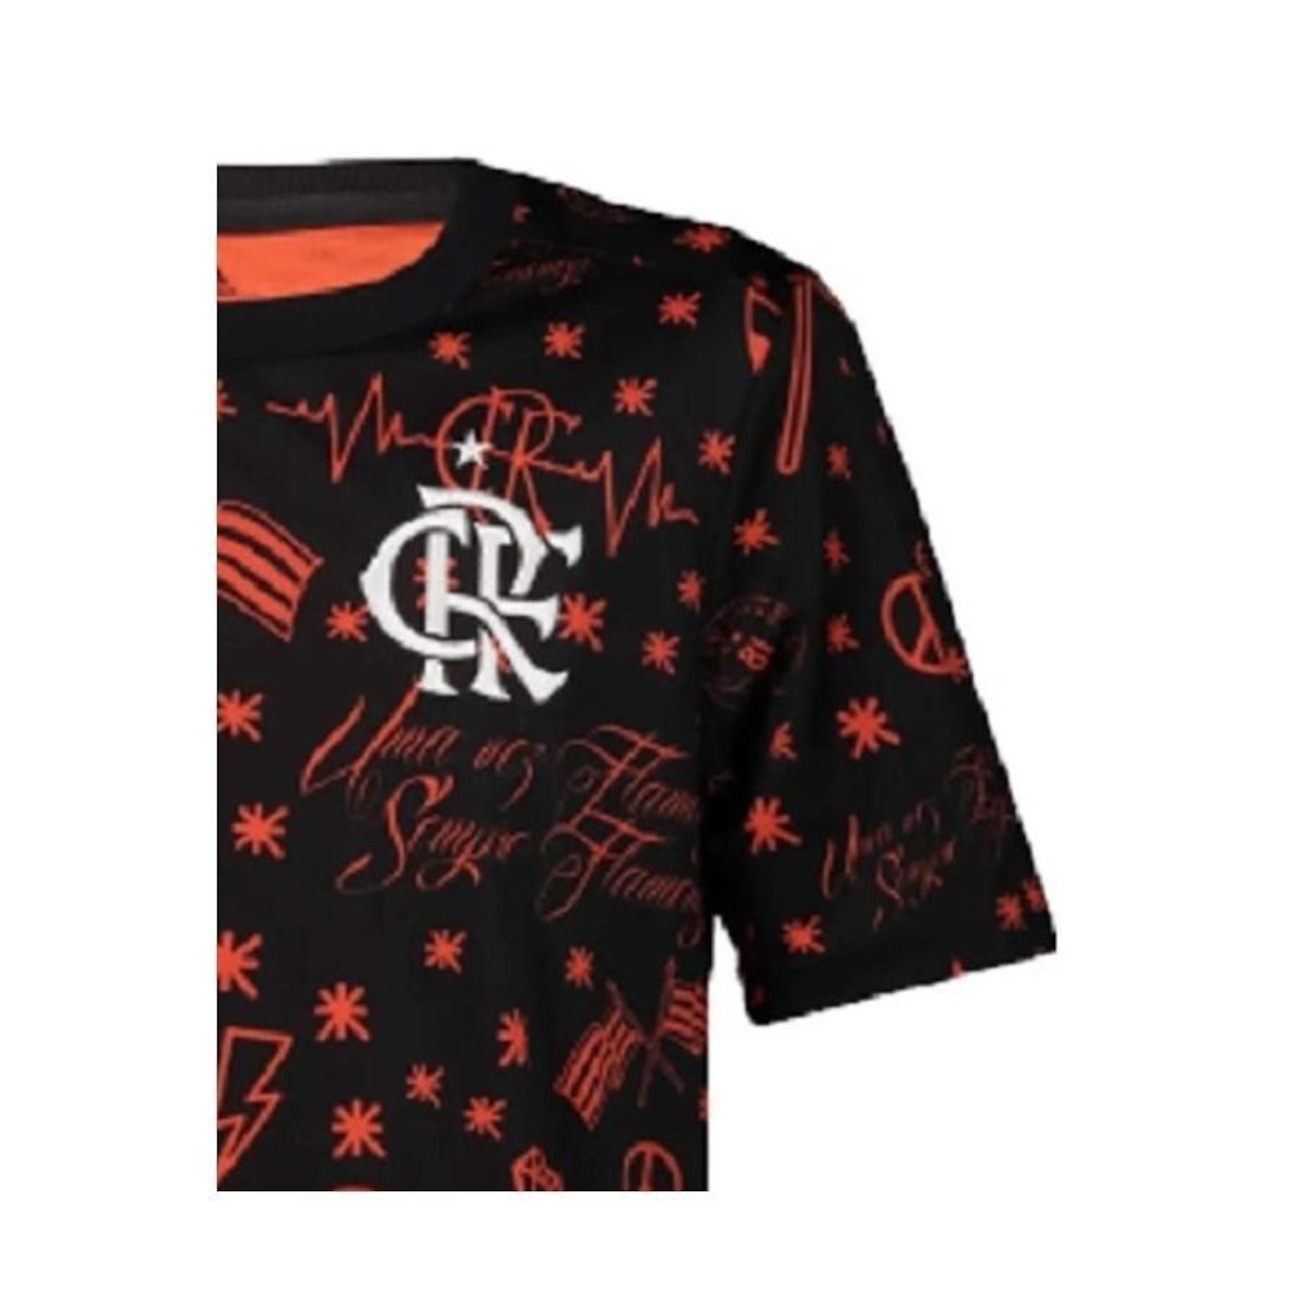 Camisa Pré-Jogo CR Flamengo